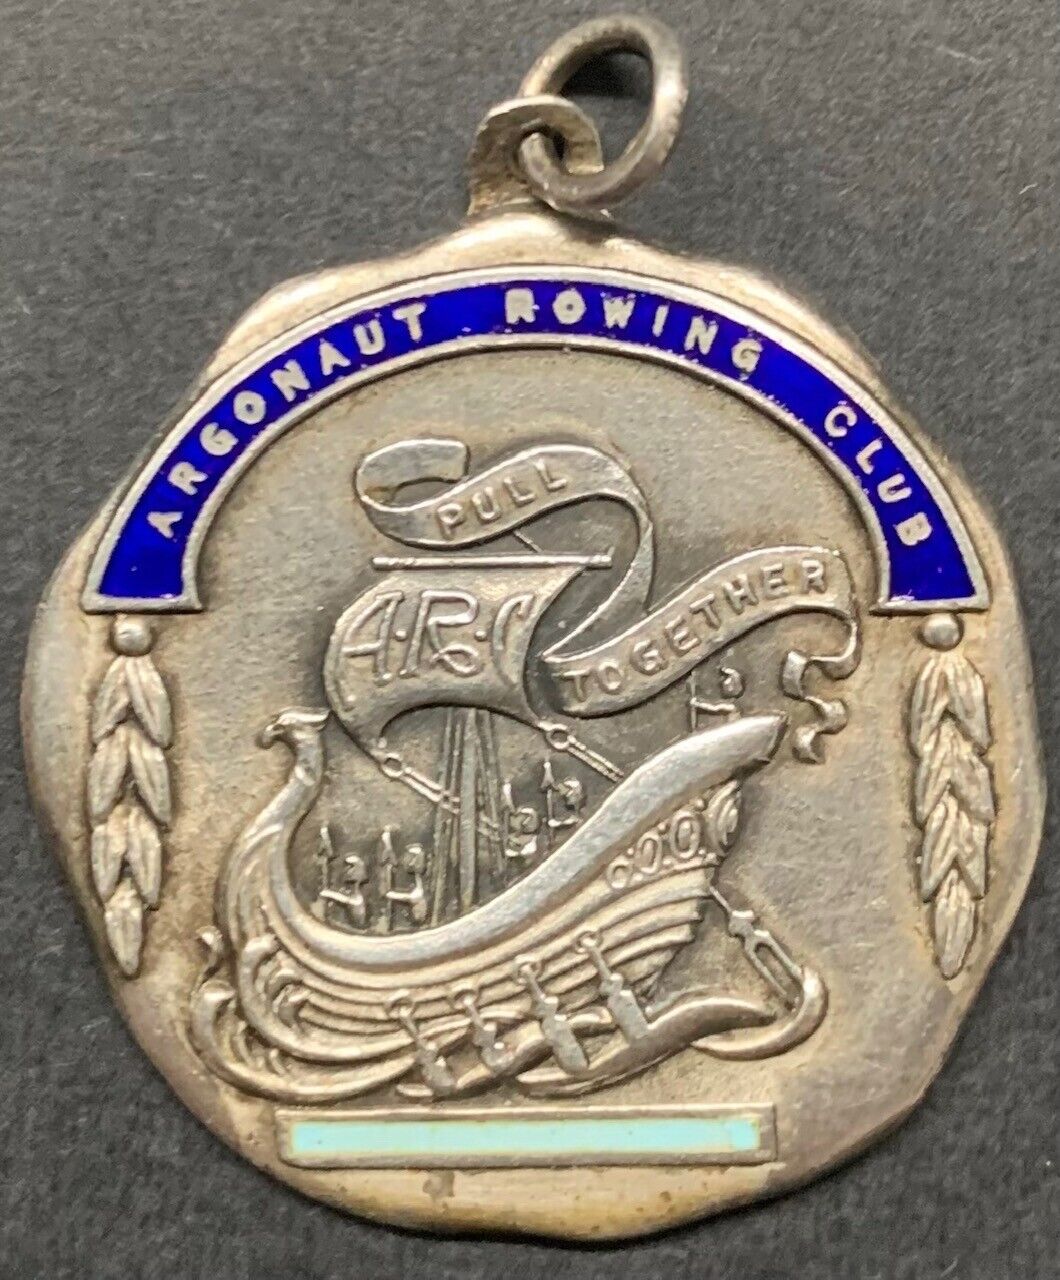 Circa 1920's Toronto Argonaut Rowing Club Sterling Silver Medal Canada Vintage